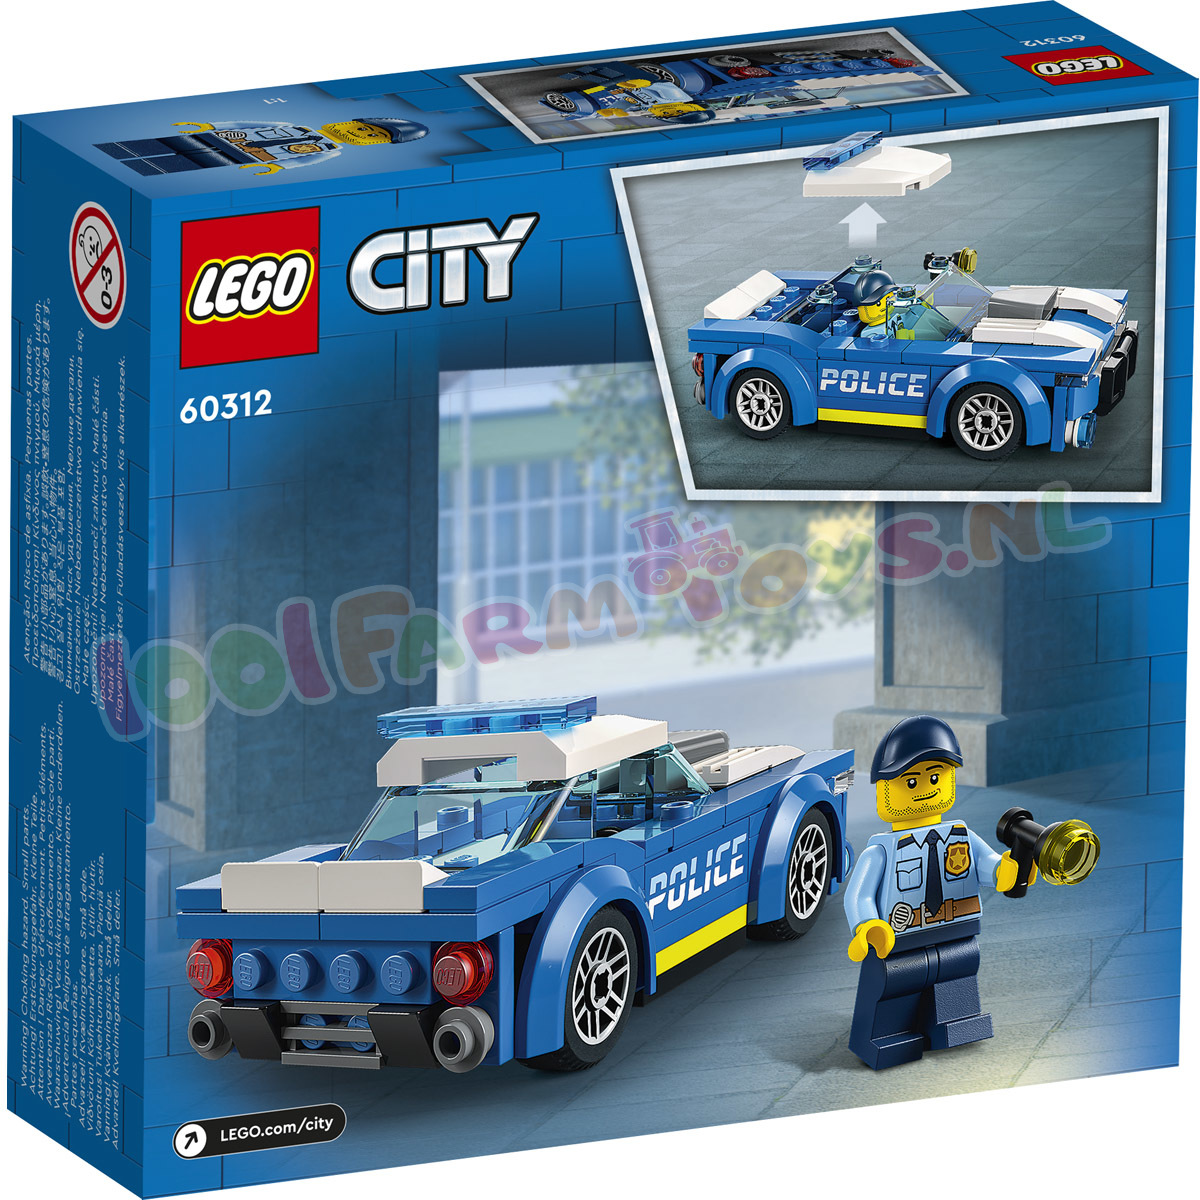 pomp Talloos Vol LEGO CITY PolitieWagen - 60312 - LEGO City - LEGO - 1001Farmtoys  landbouwspeelgoed - Dit een tijdelijke ACTIE en is uitsluitend geldig op  huidige